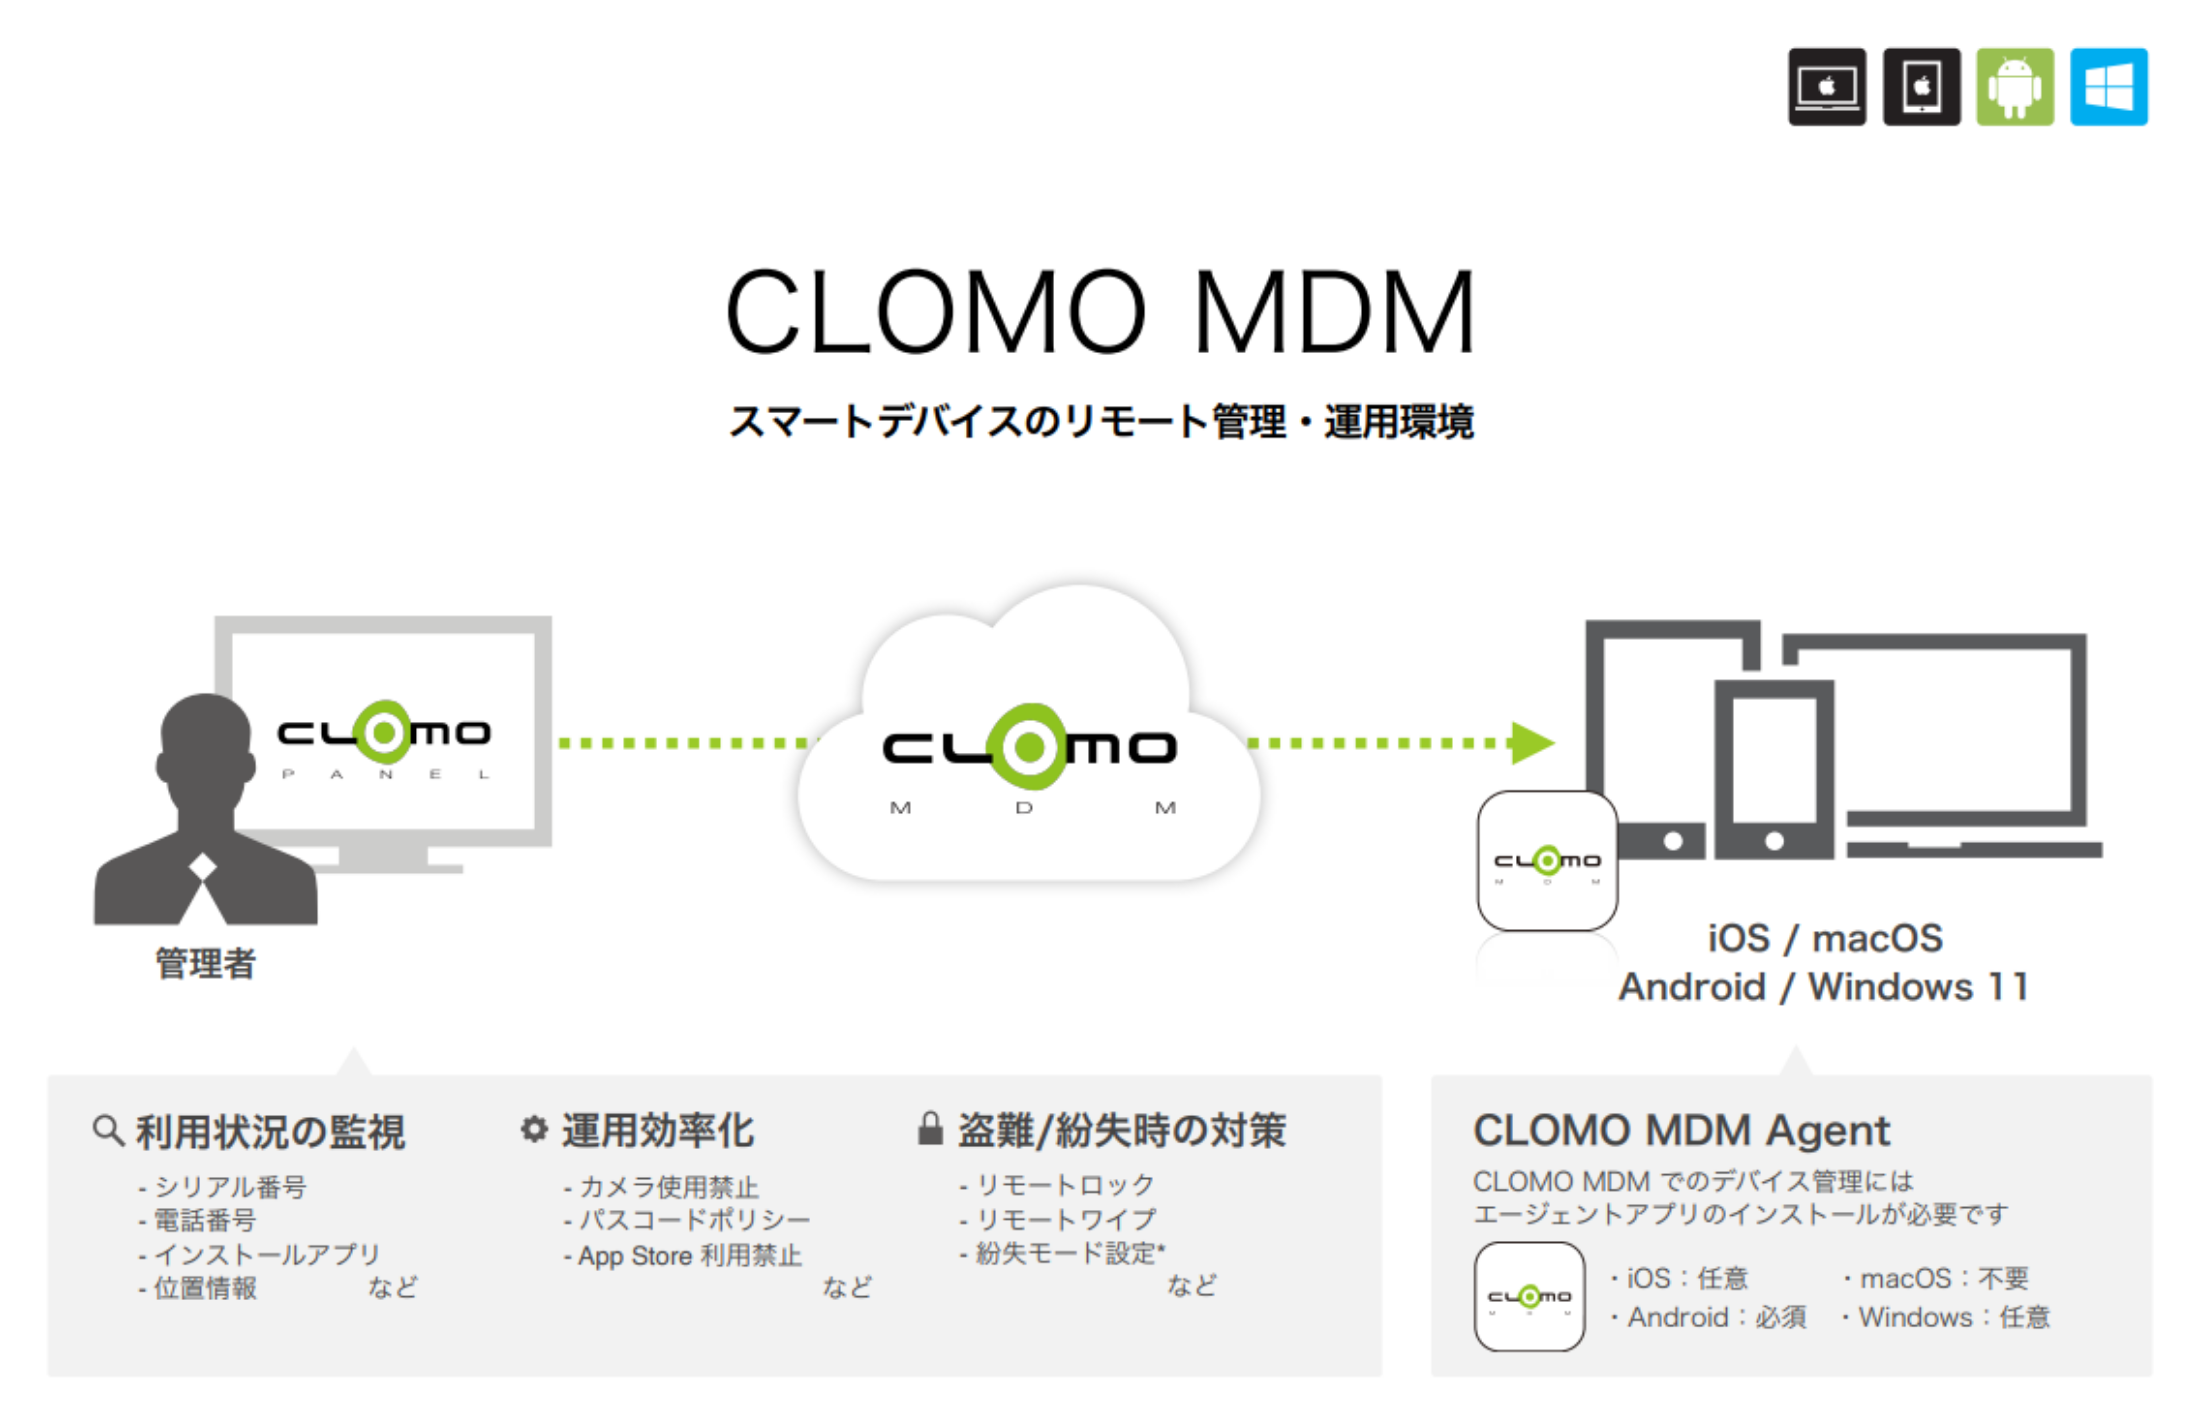 「CLOMO MDM for ビジネスプラス」とは？